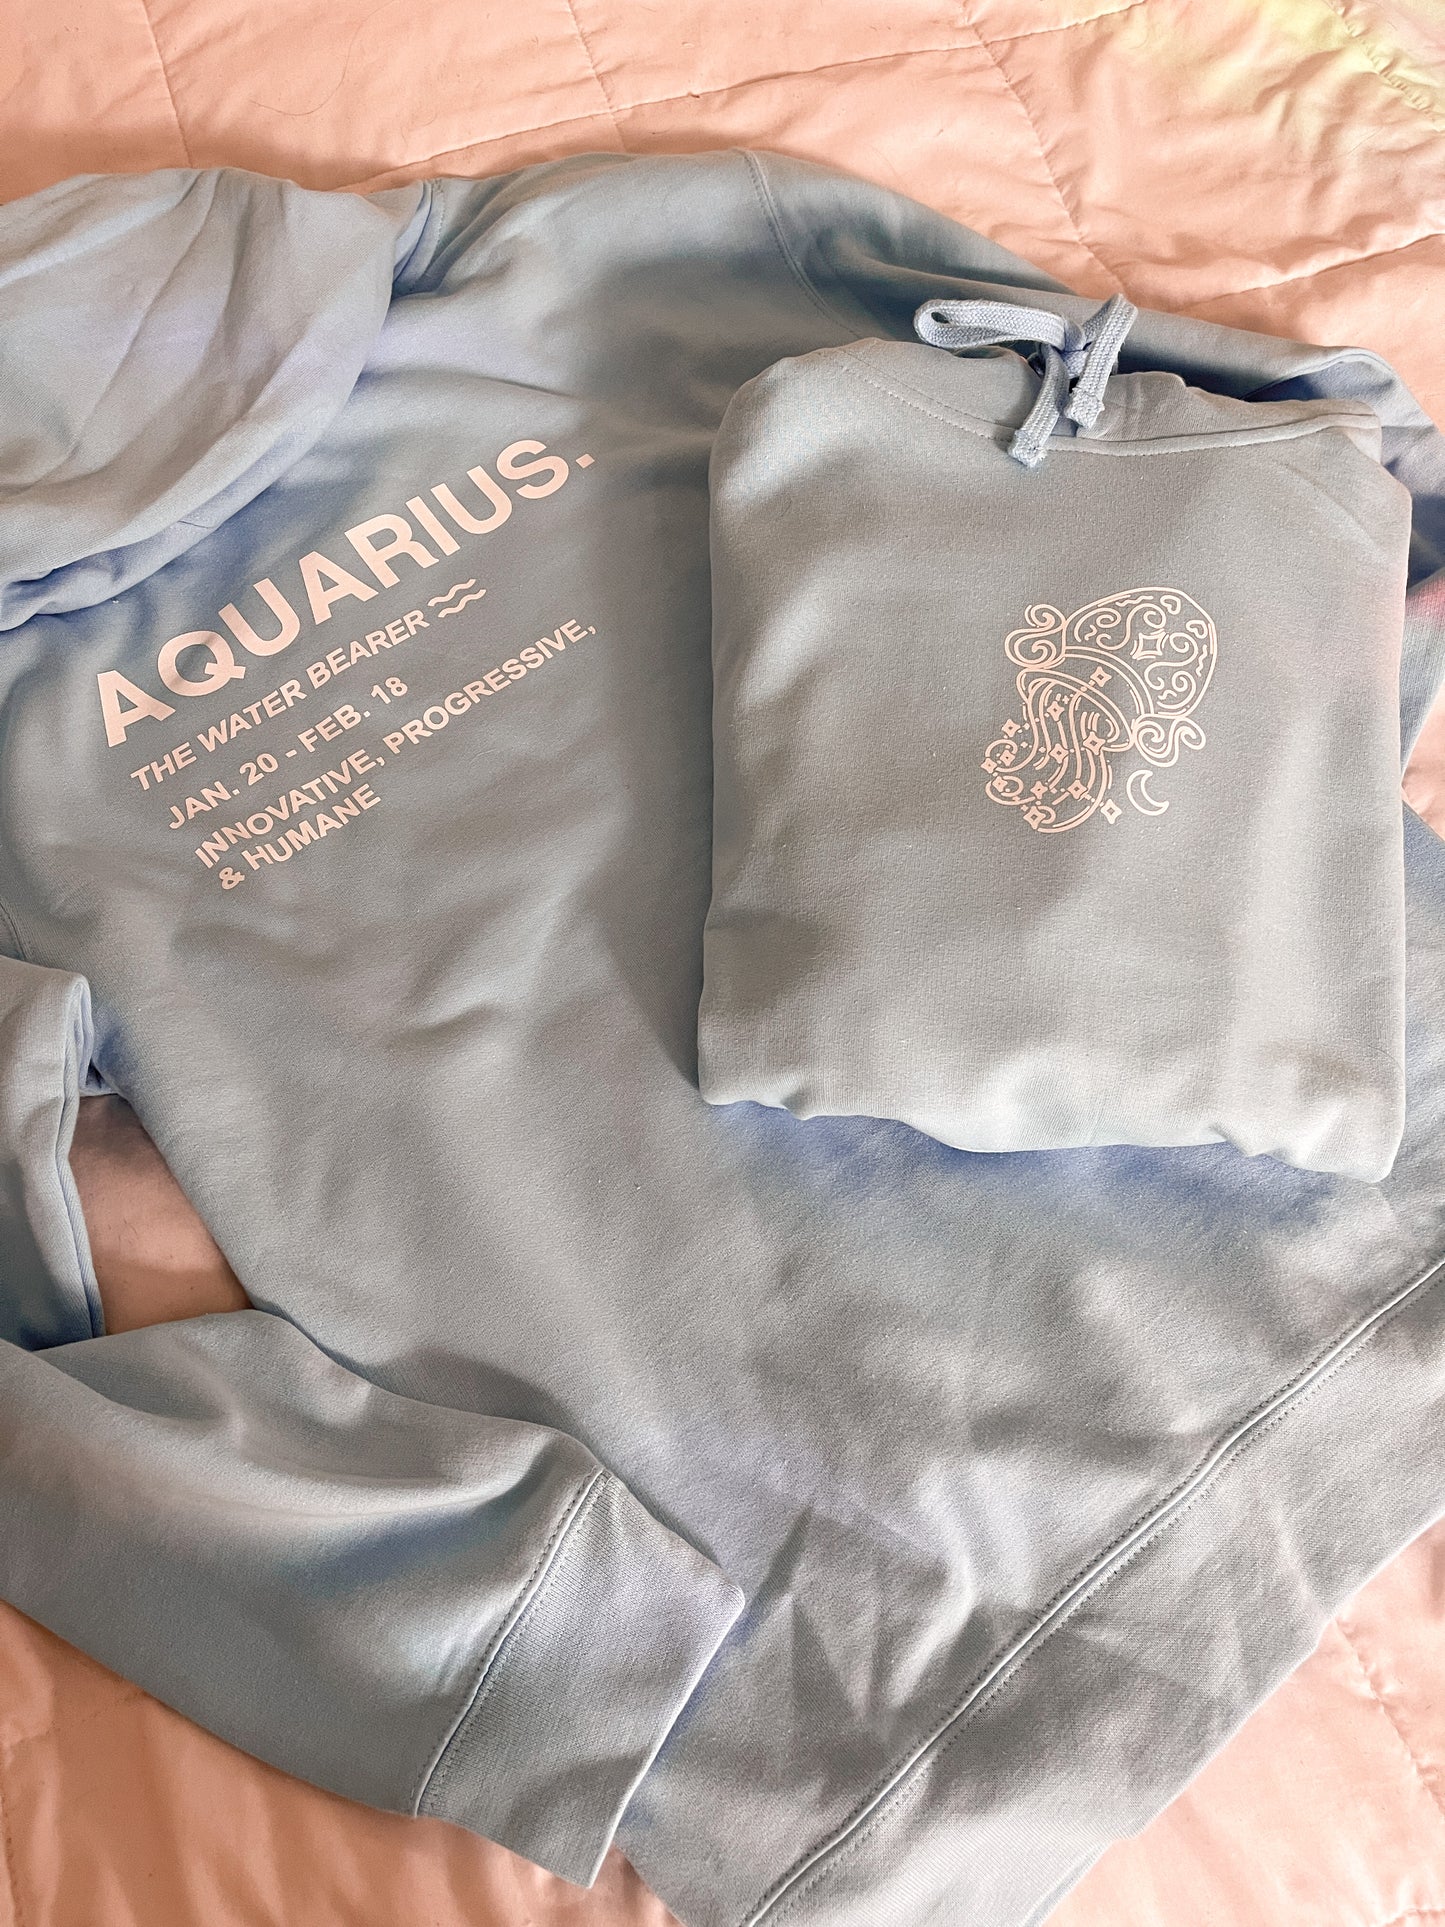 Aquarius Hoodie Sweatshirt